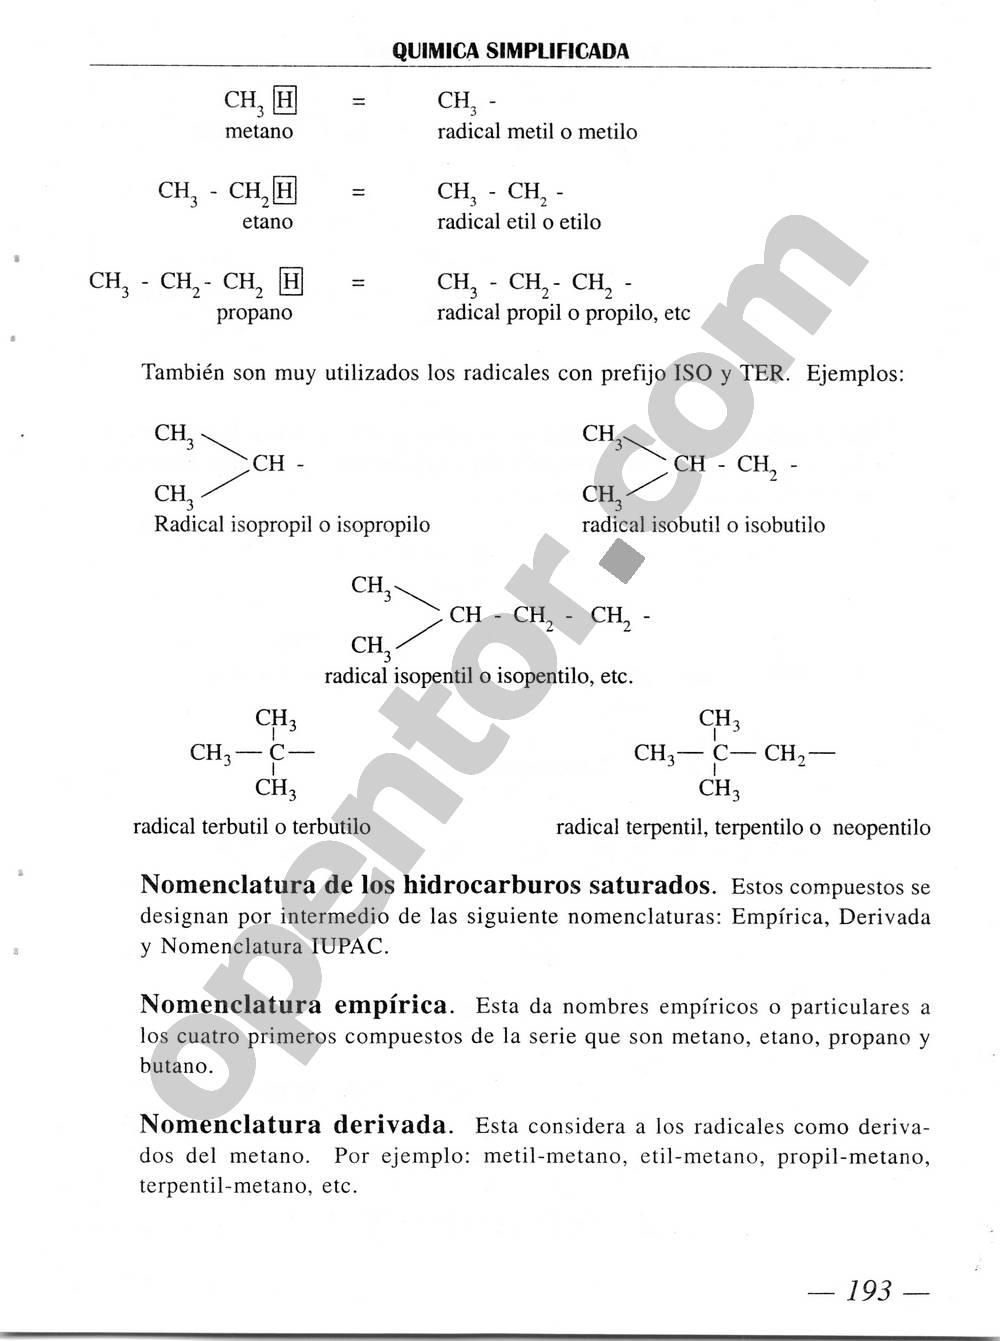 Química Simplificada de Diómedes Solano - Página 193